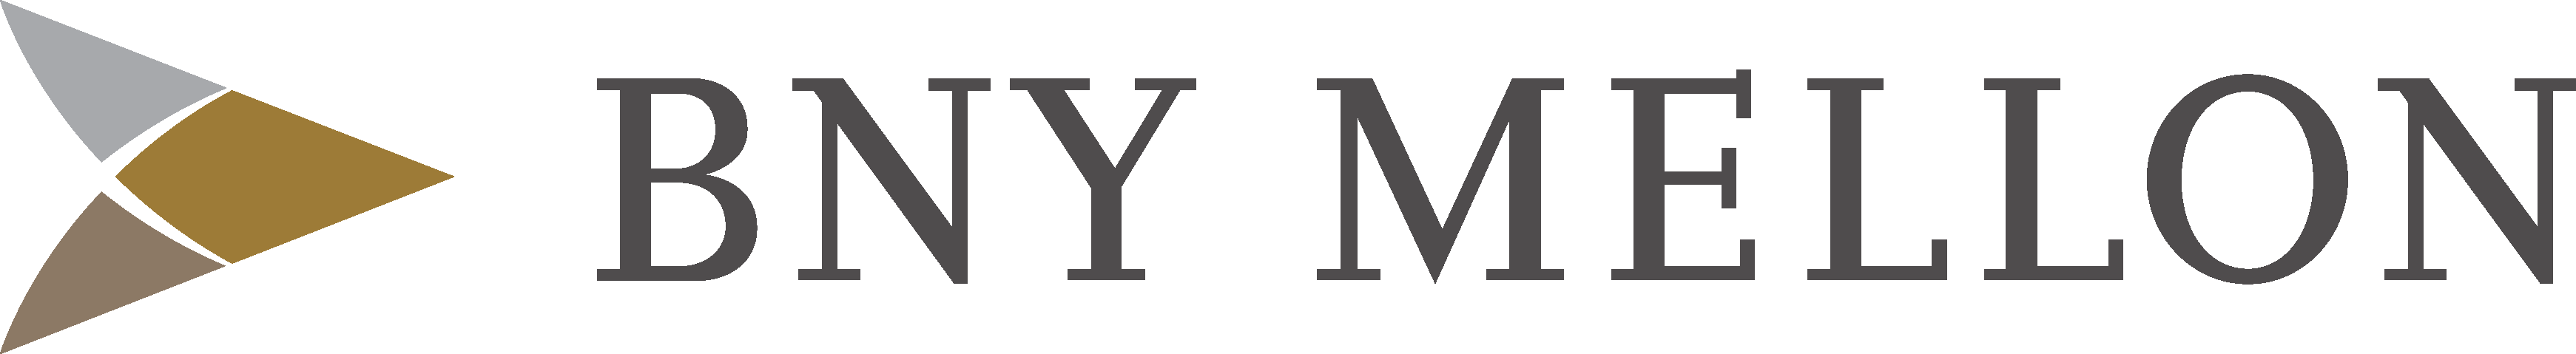 BNY Mellon Logo - Bny Mellon Logo Free Vector Download